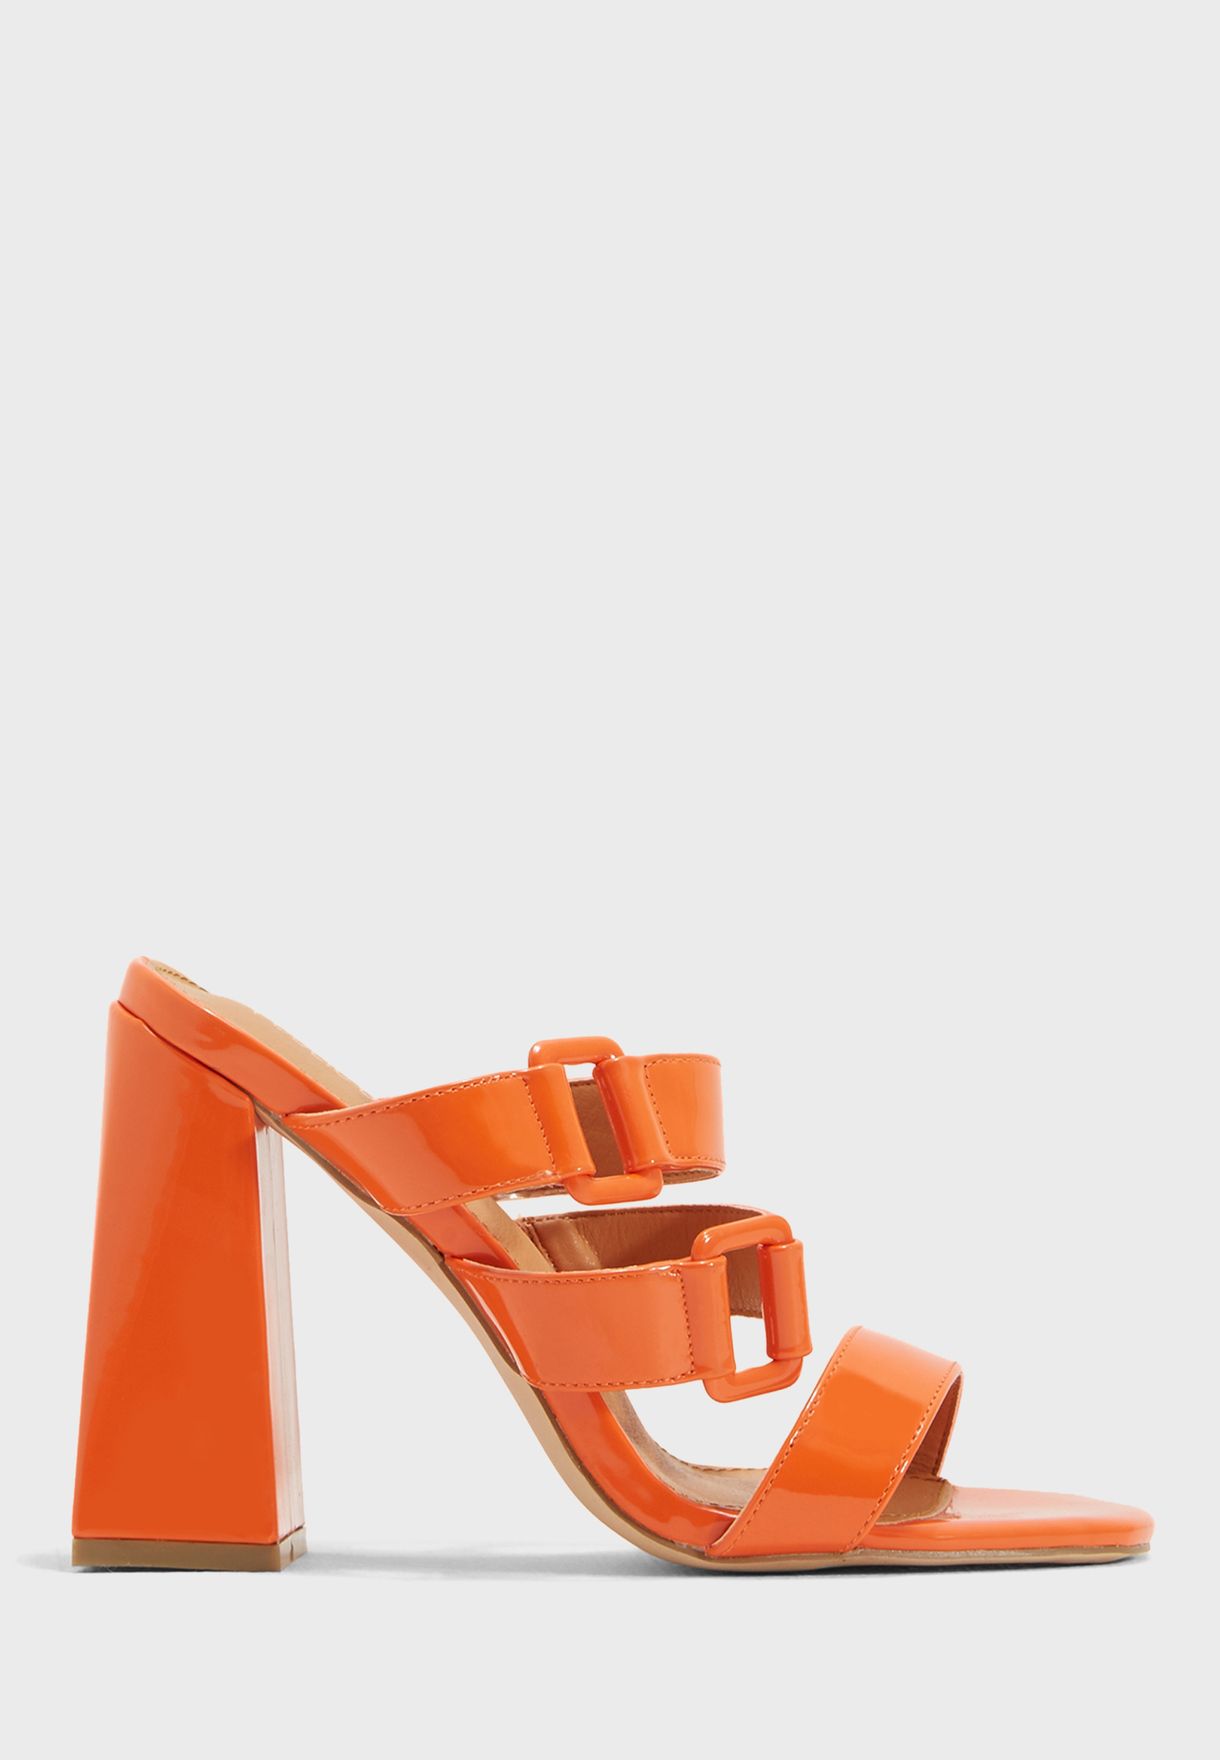 orange heeled mules